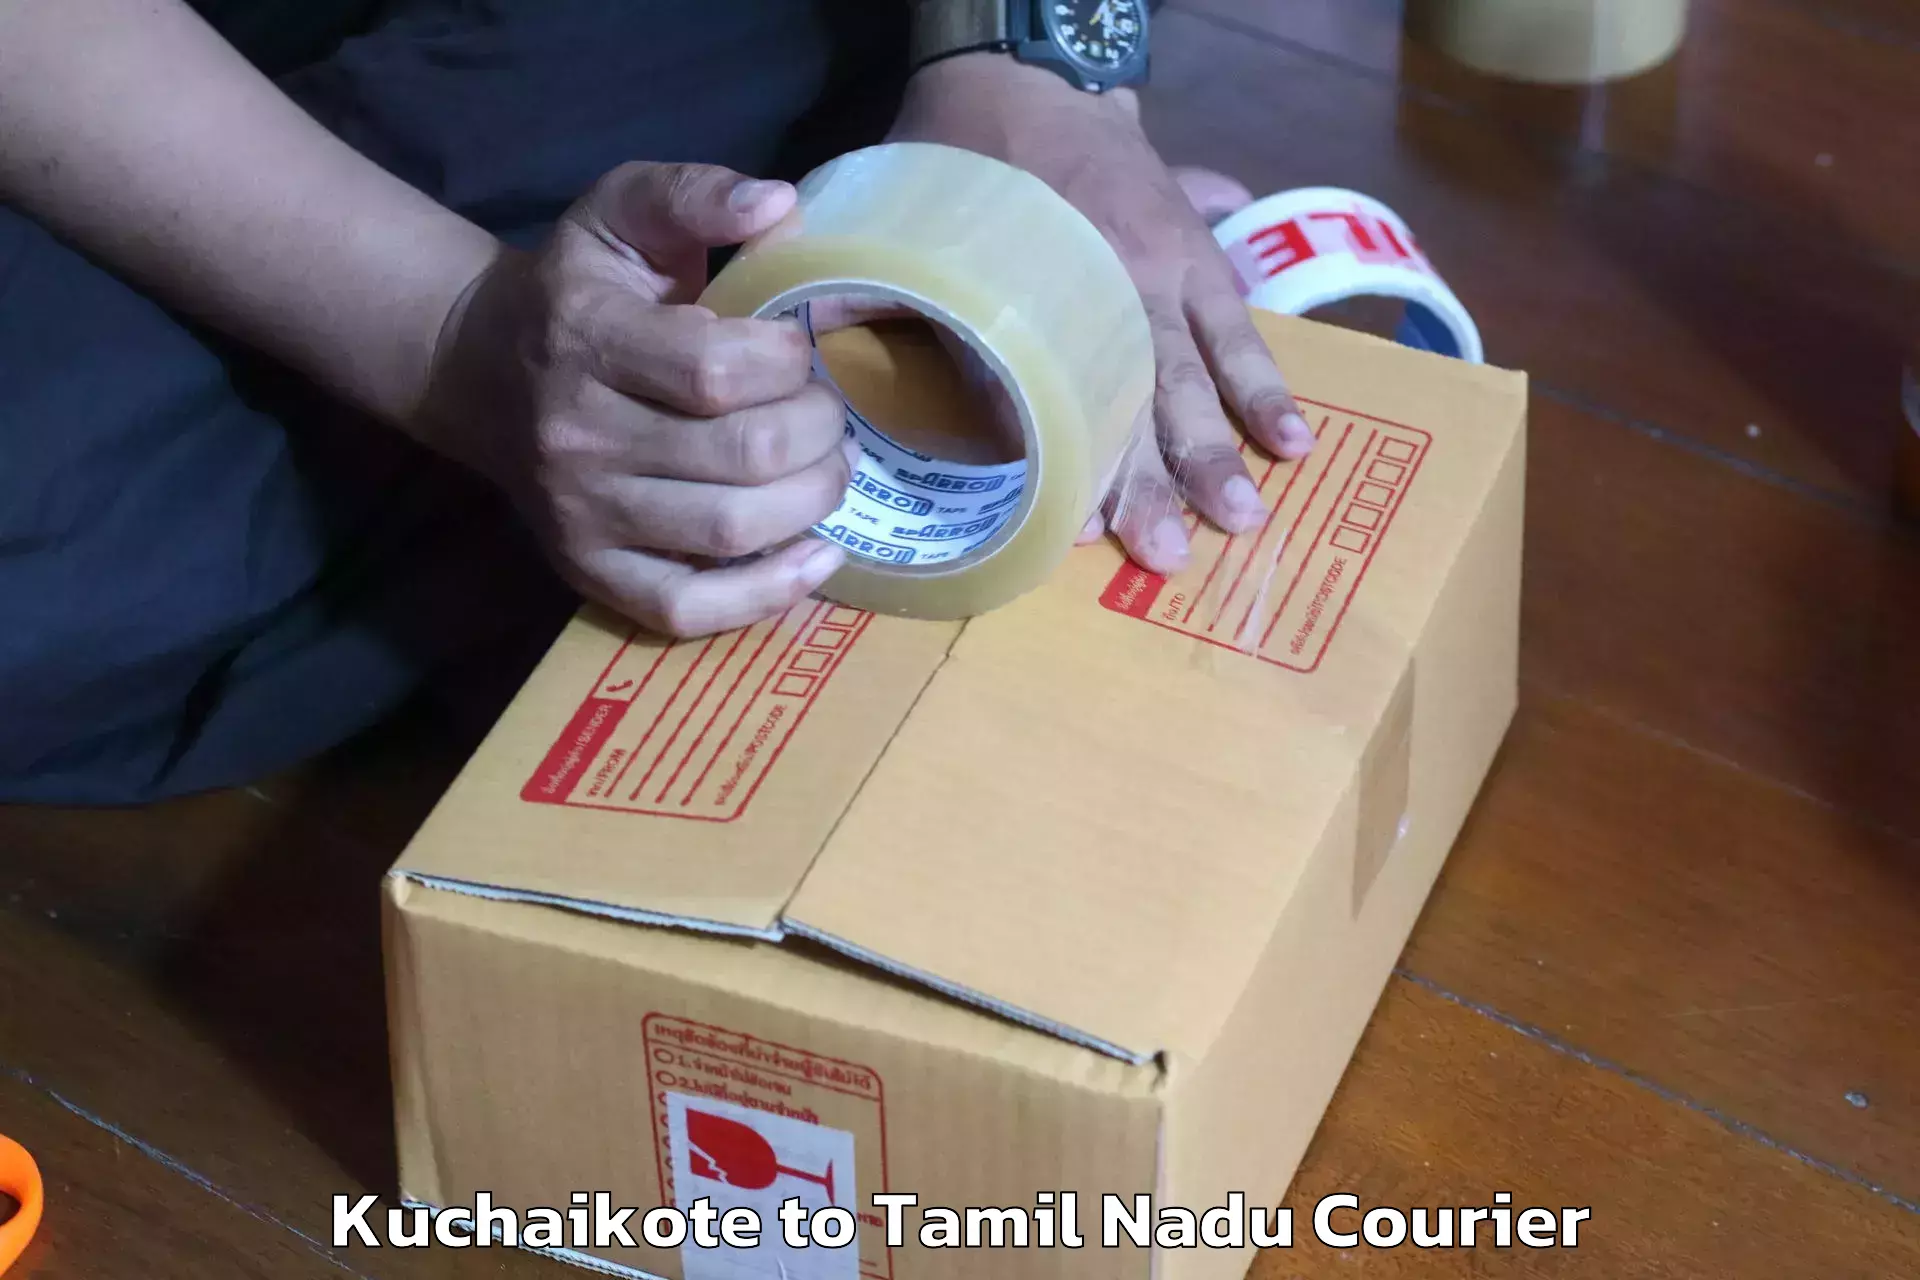 Quality moving and storage Kuchaikote to Thiruthuraipoondi